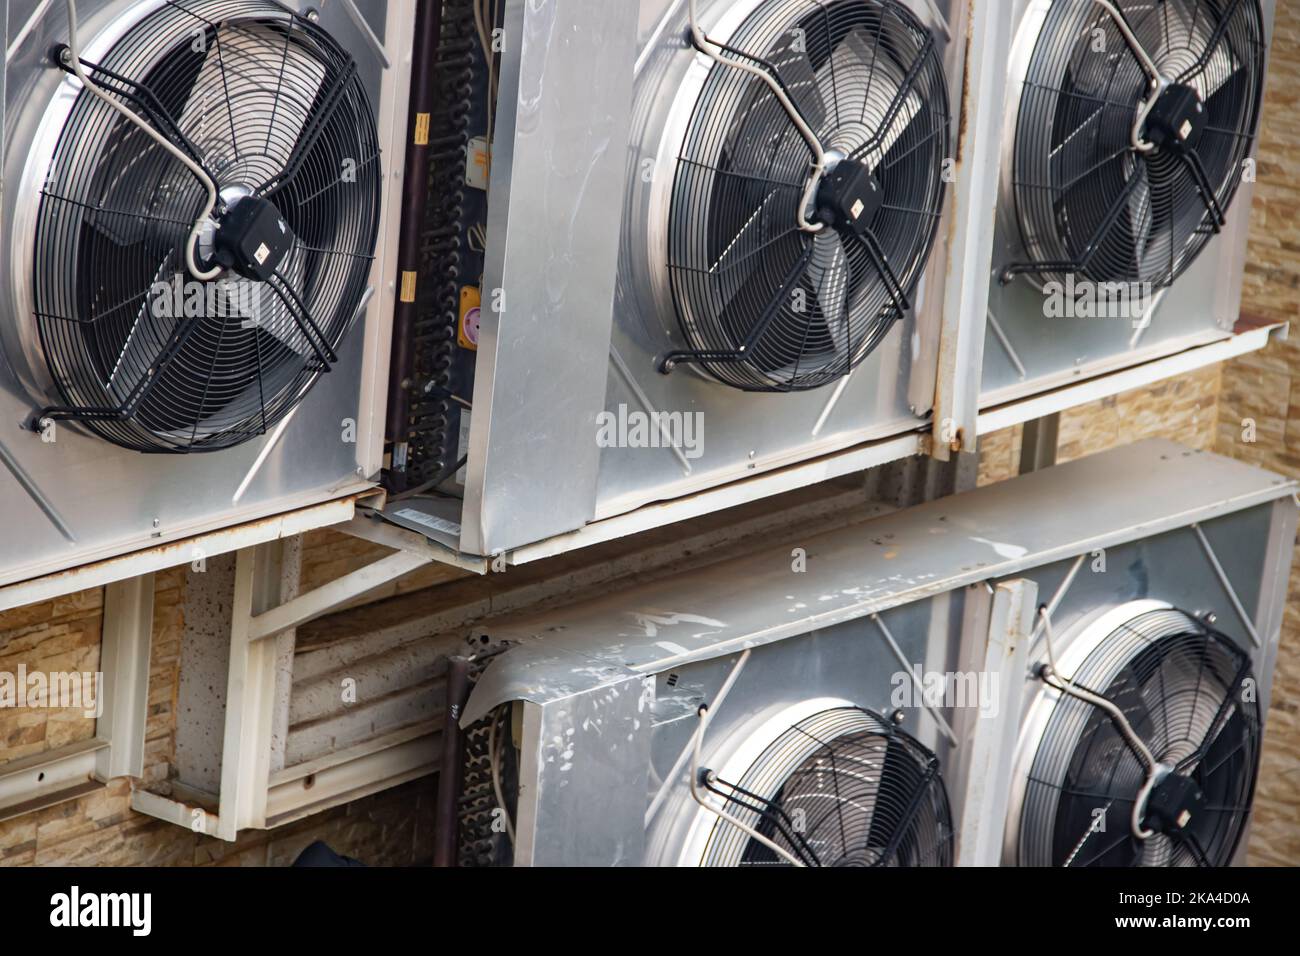 Unidades externas de aire acondicionado industrial fijadas en la pared exterior Foto de stock